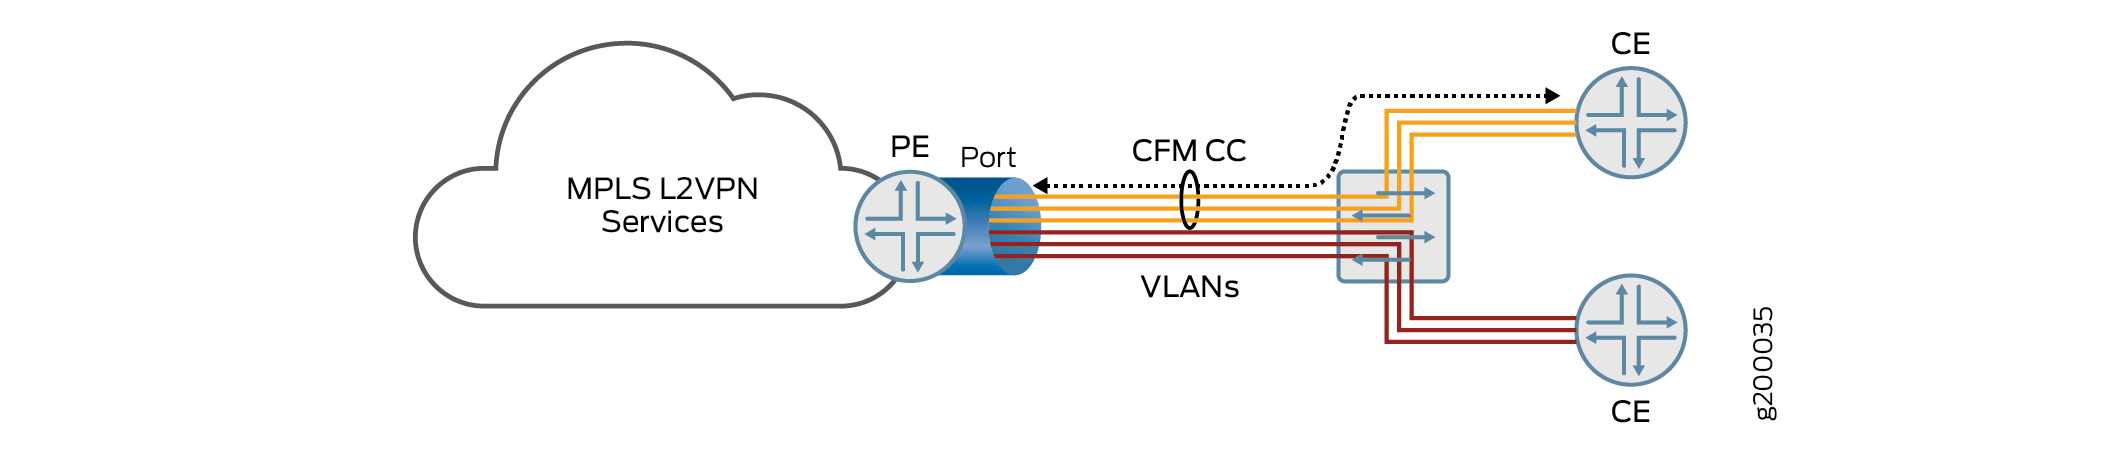 Topologie de services VLAN multiples partageant un port unique sur un routeur PE Destiné à plusieurs routeurs CE